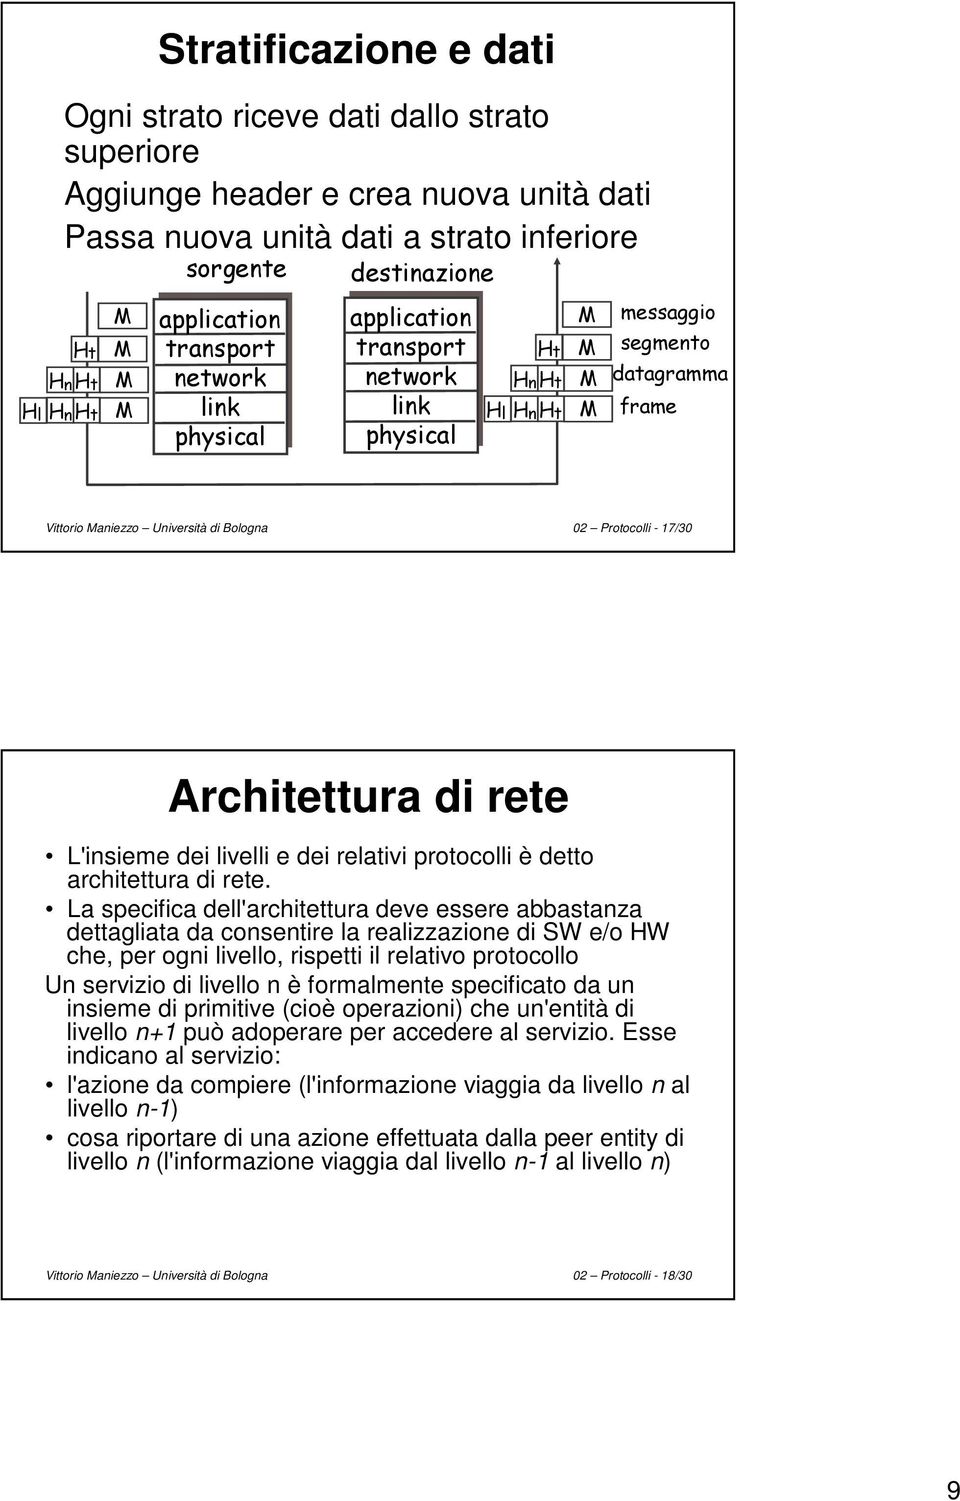 La specifica dell'architettura deve essere abbastanza dettagliata da consentire la realizzazione di SW e/o HW che, per ogni livello, rispetti il relativo protocollo Un servizio di livello n è